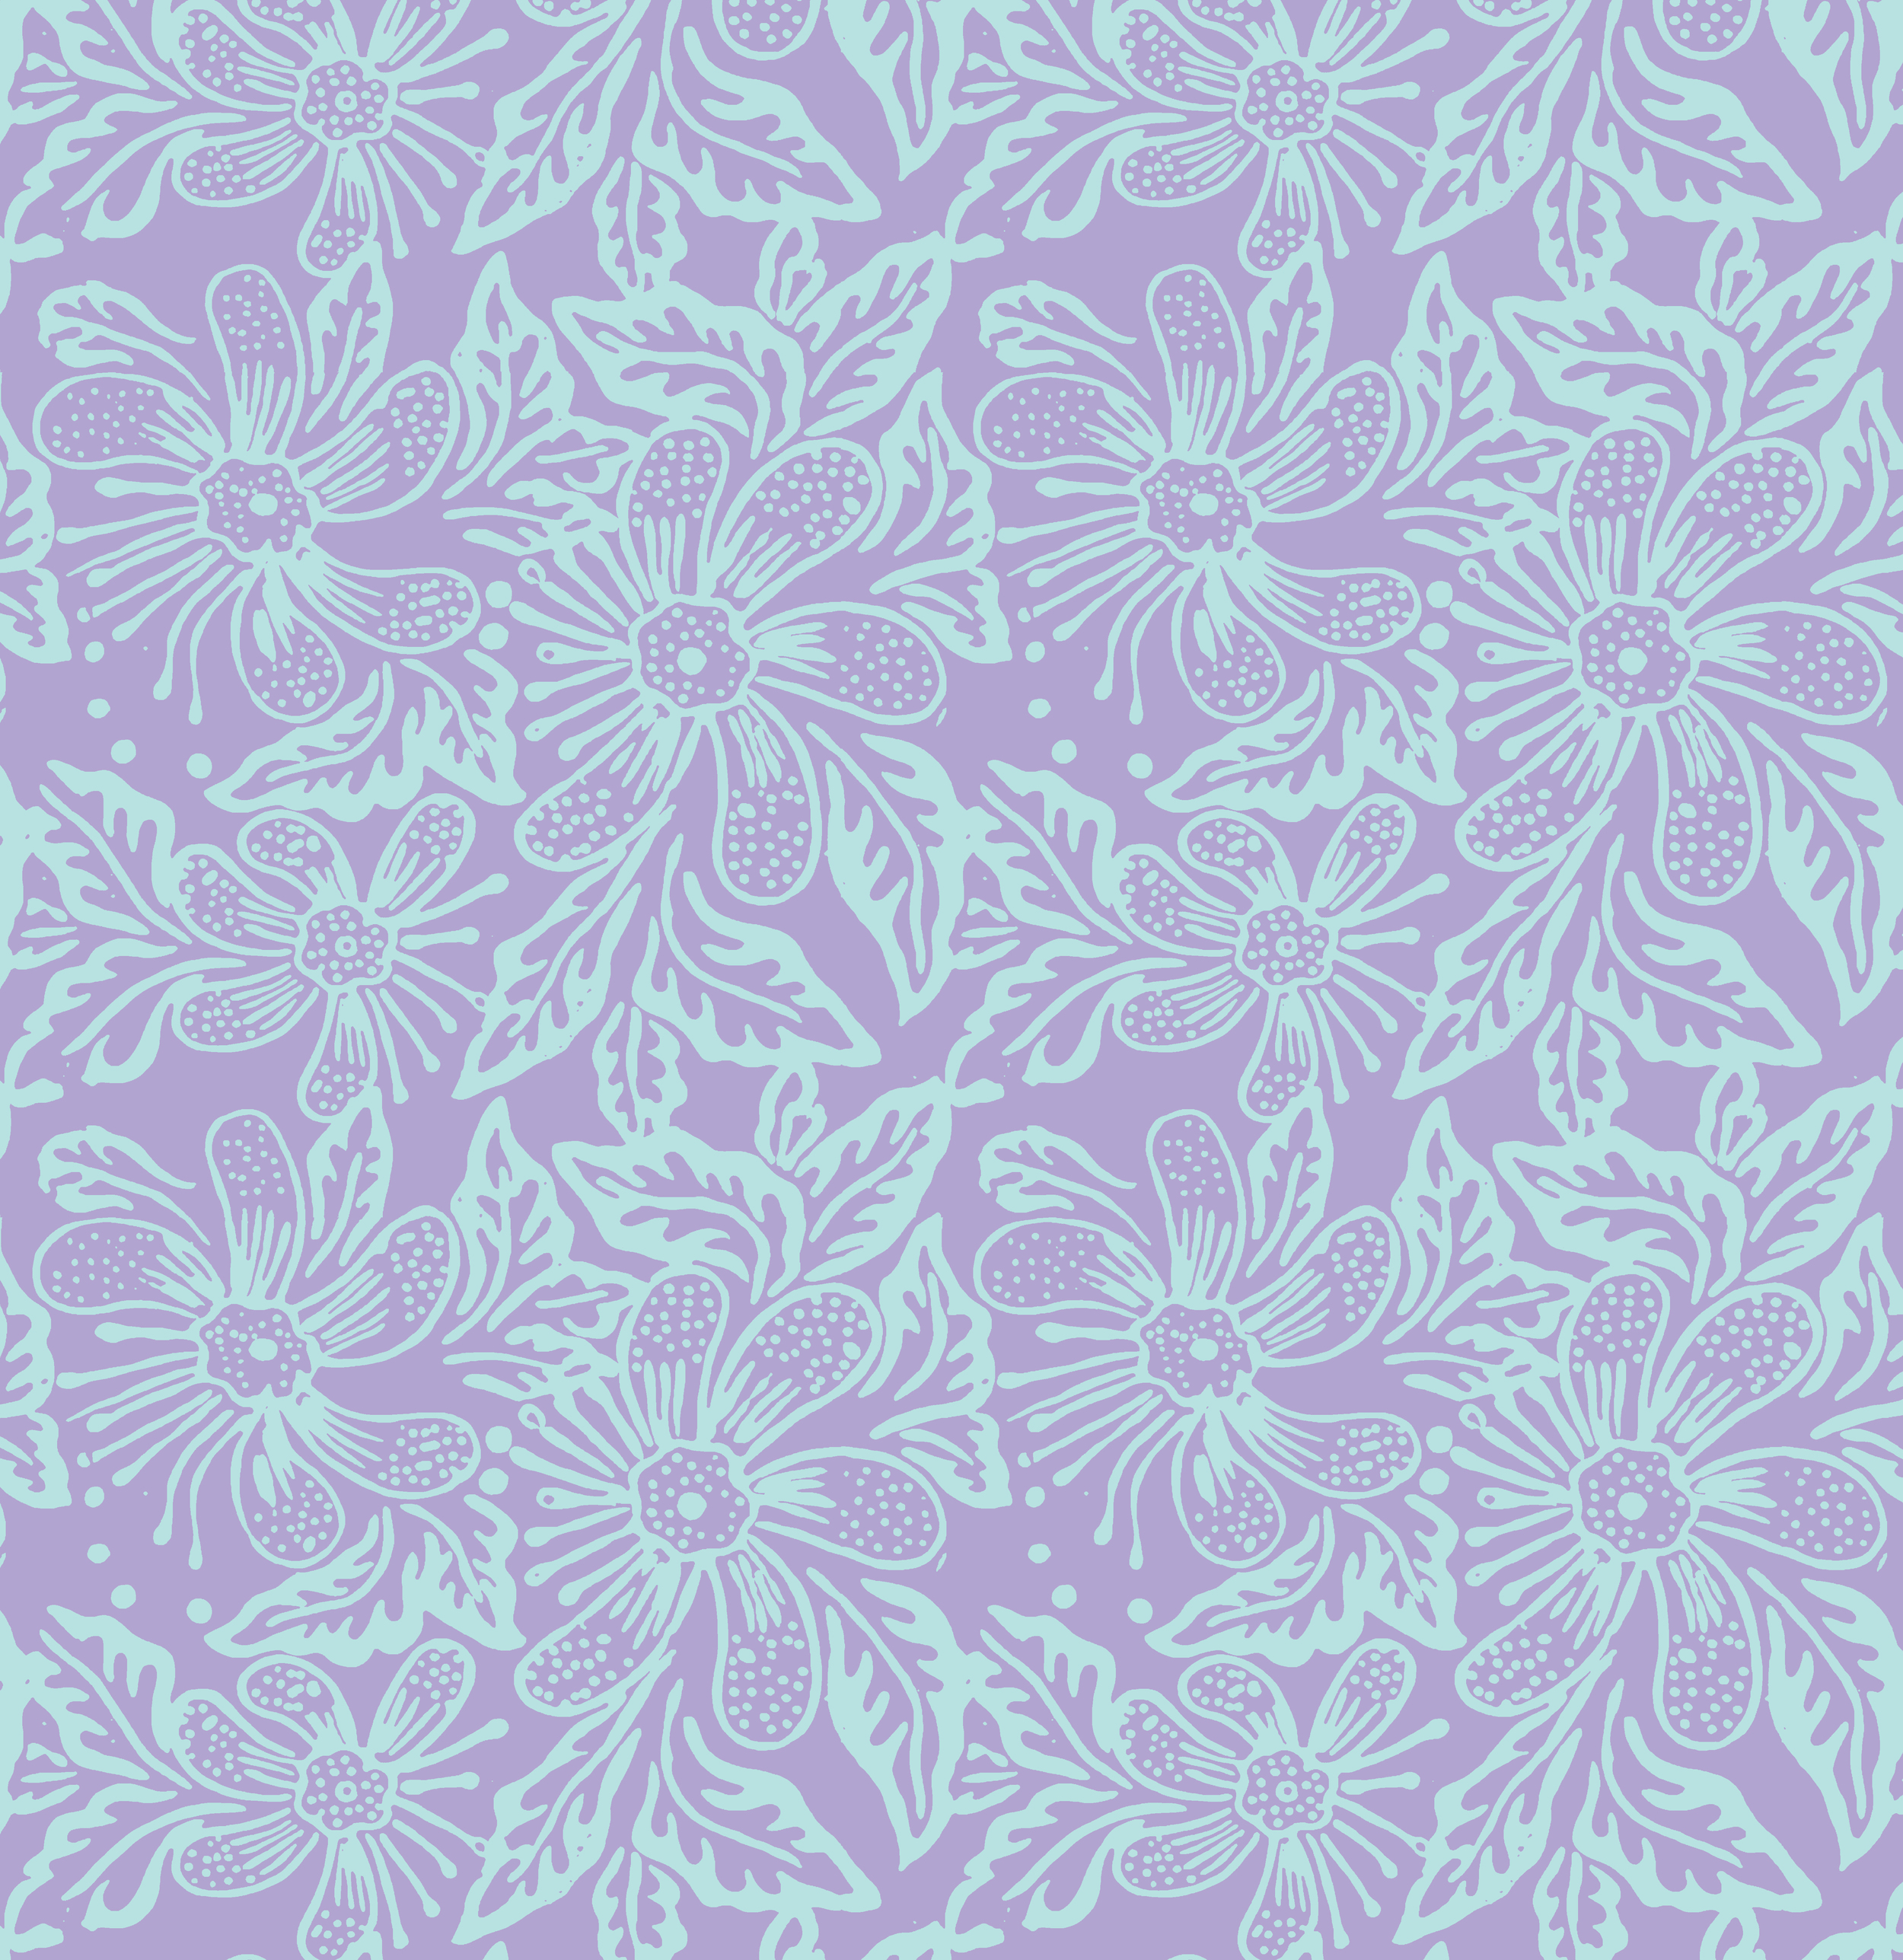 Three Islands R16 & SP16 Batik Floral Print